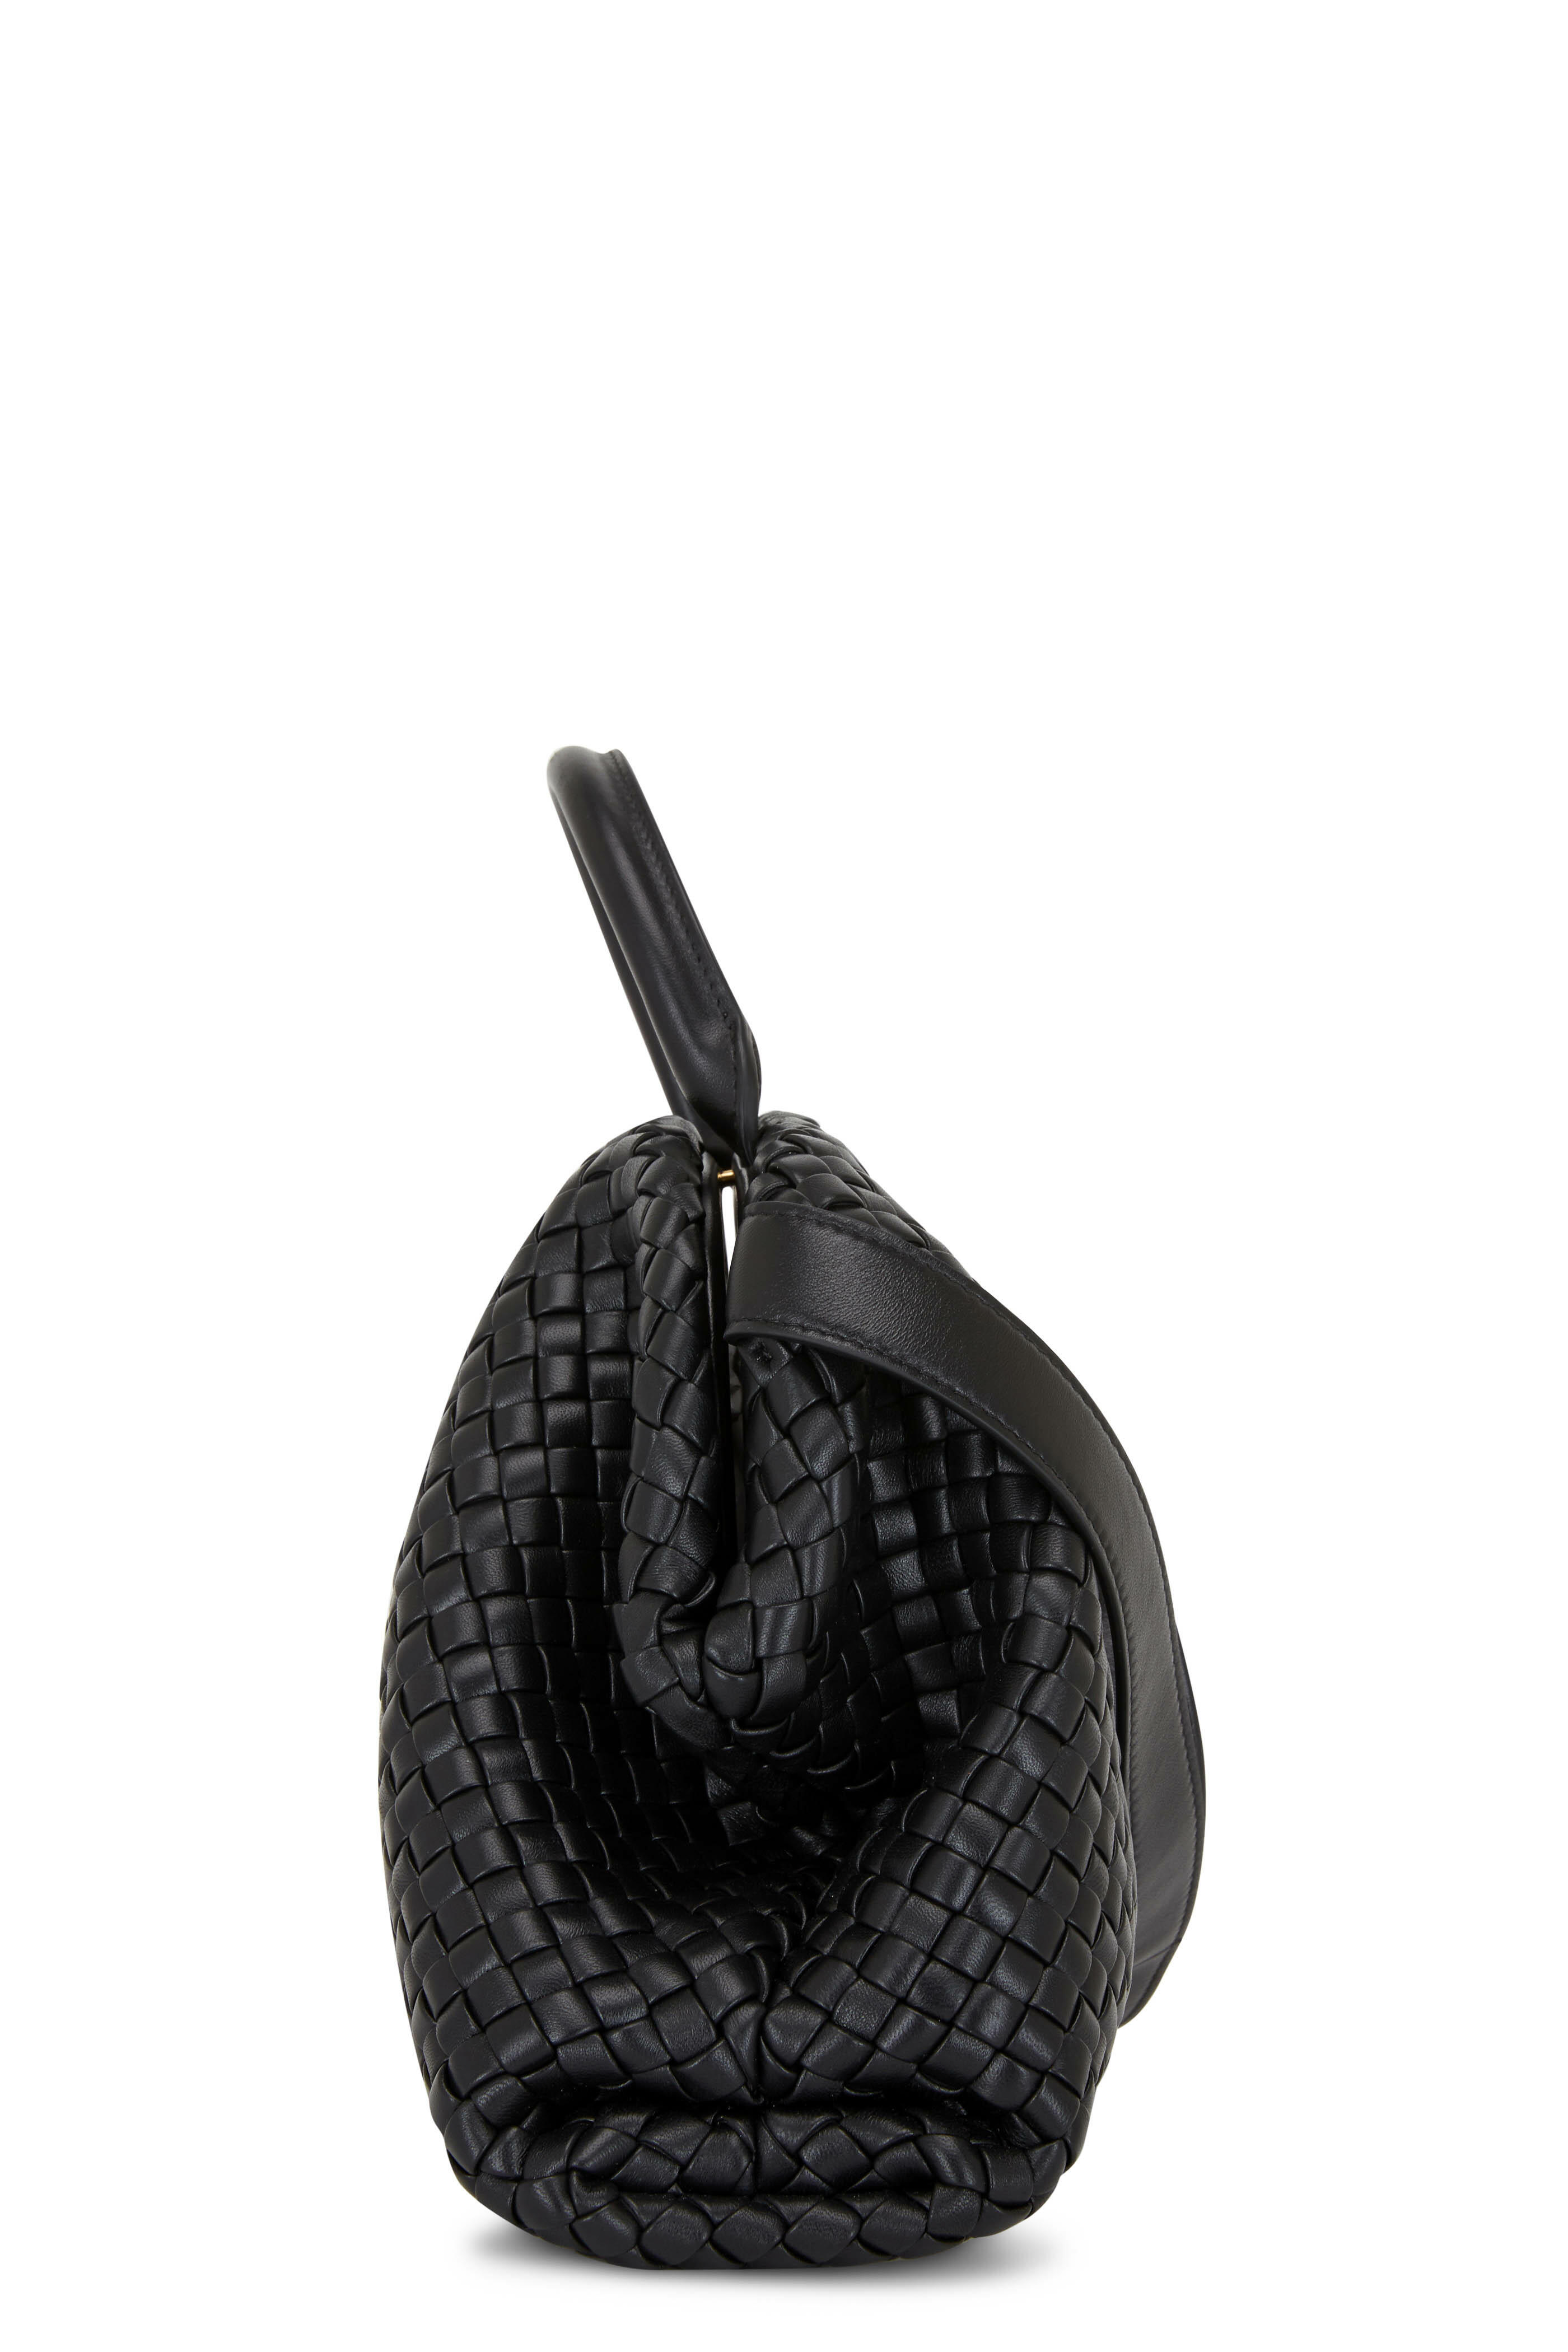 Dark Taupe Leather Kiss Lock Closure Handbag With Adjustable